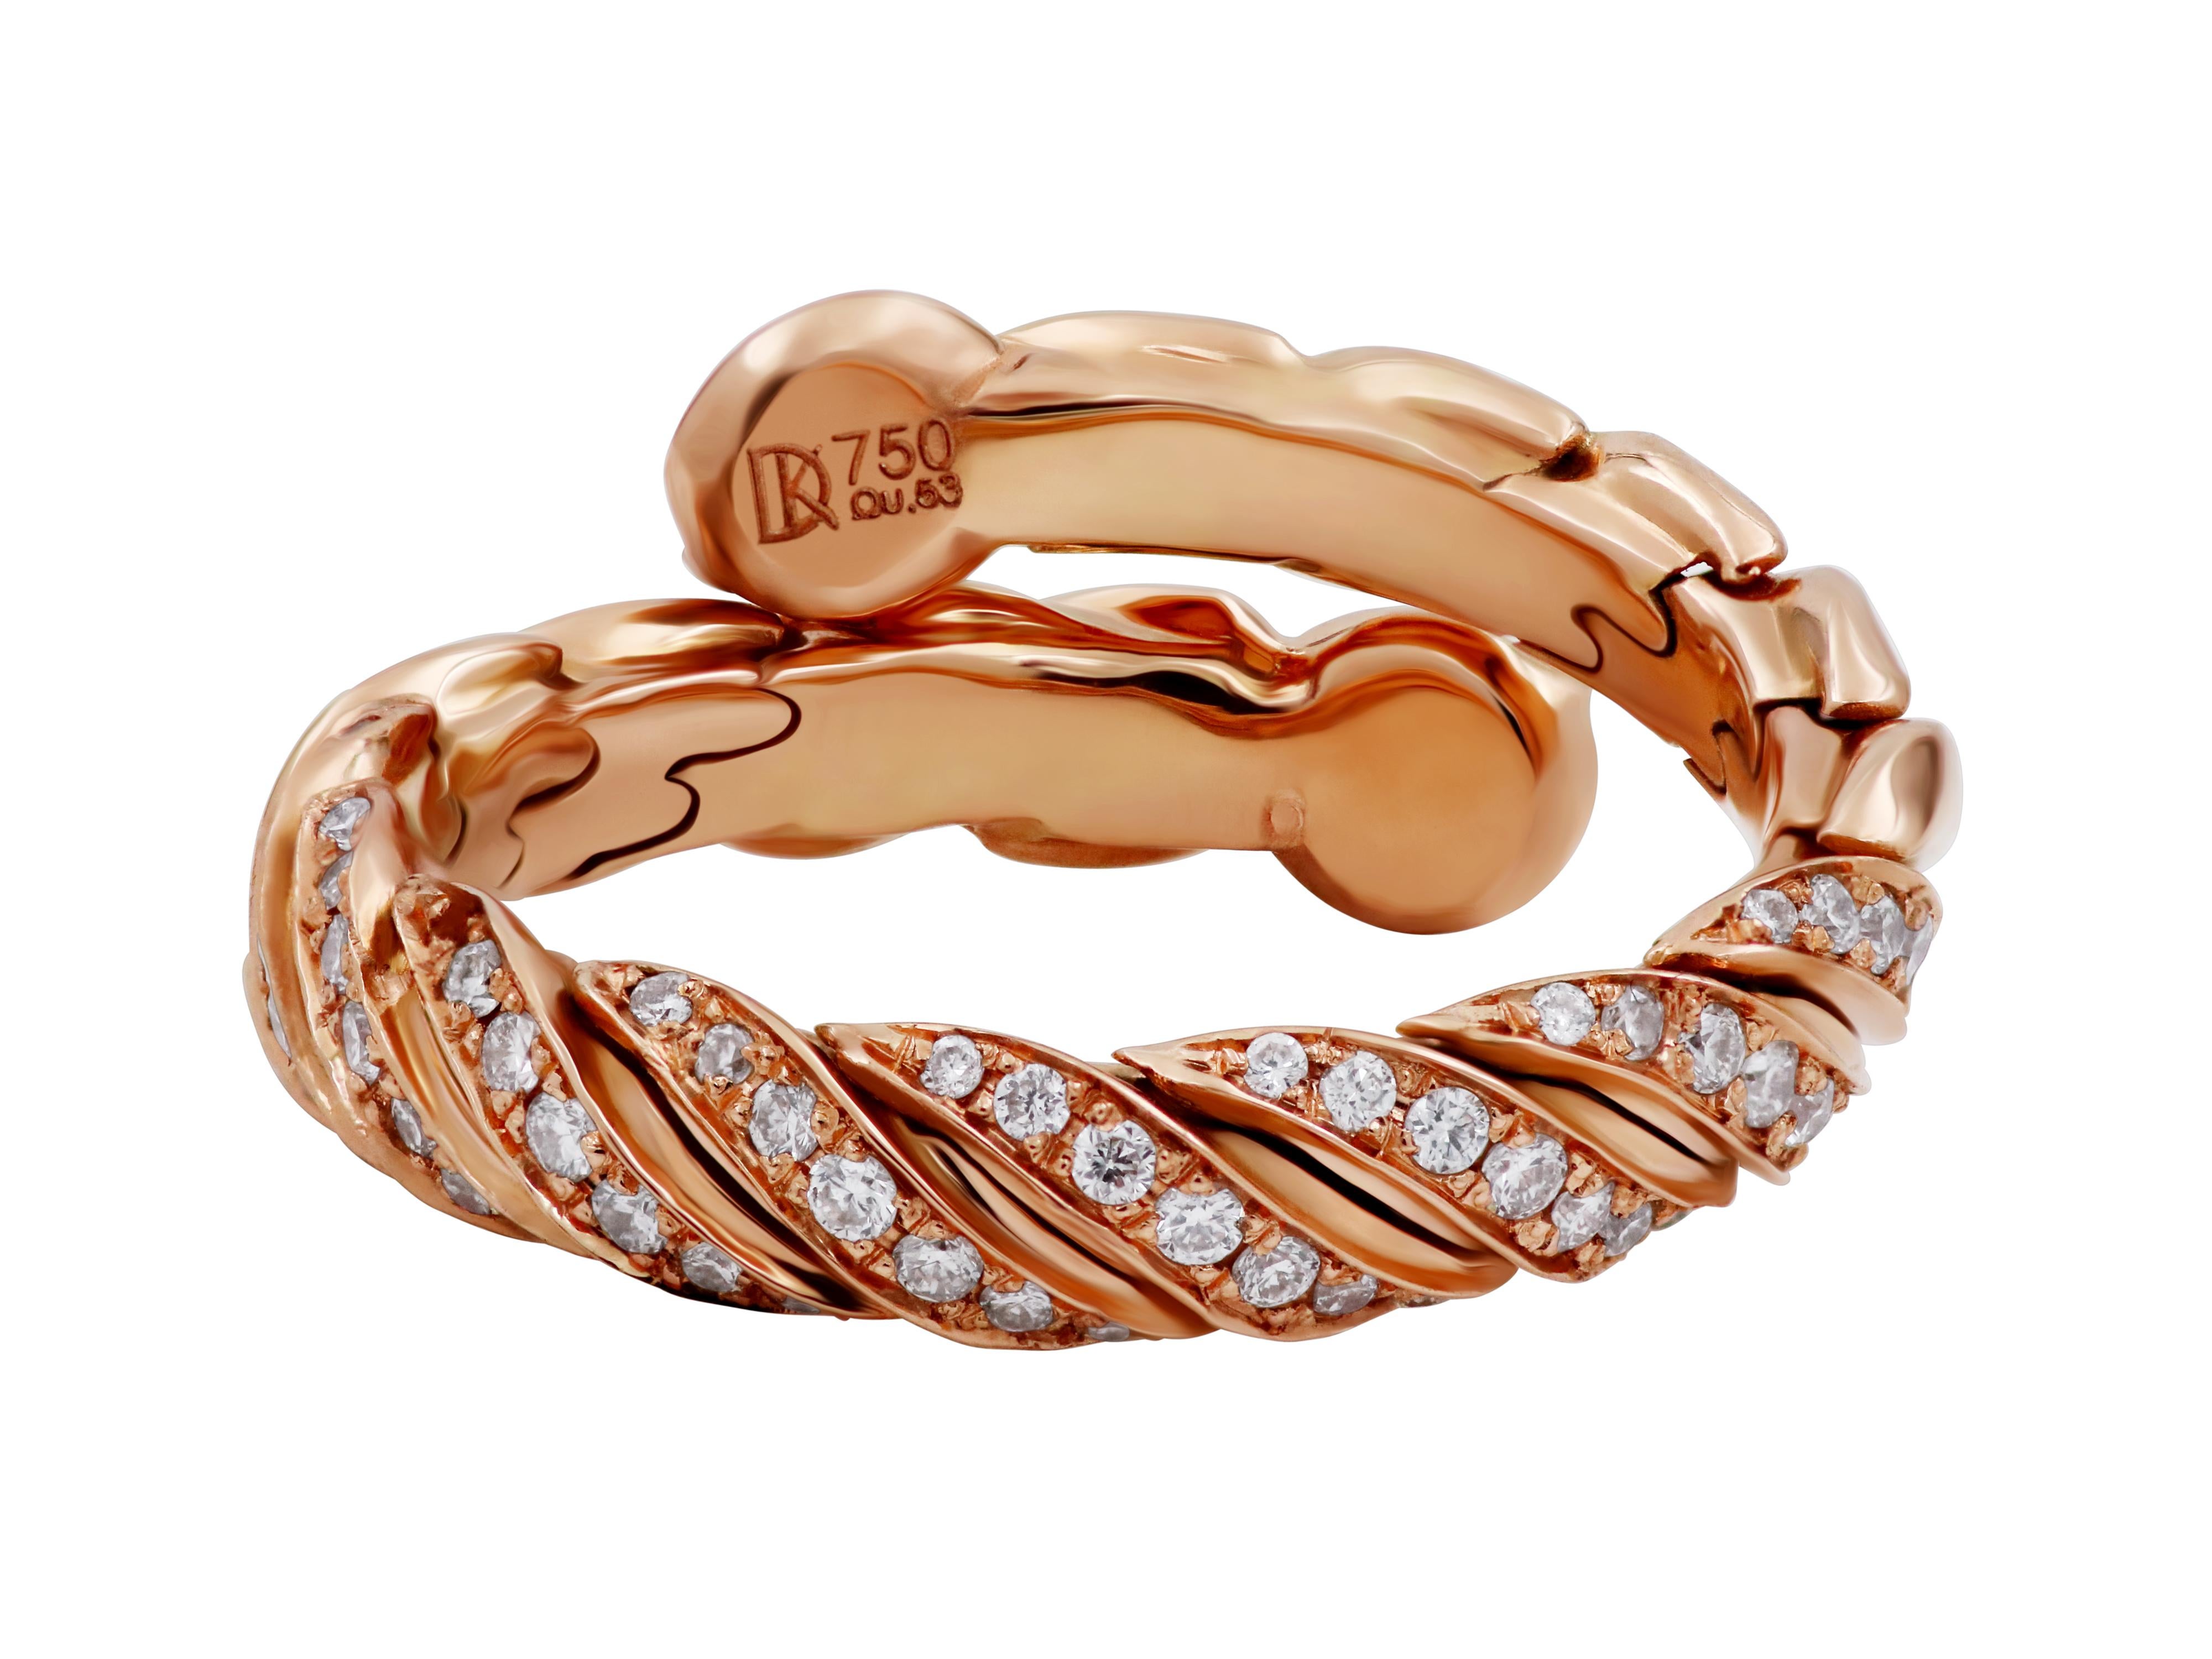 Verstellbarer Ring aus 18 Karat Roségold mit 0,29 Karat Diamanten im Brillantschliff.